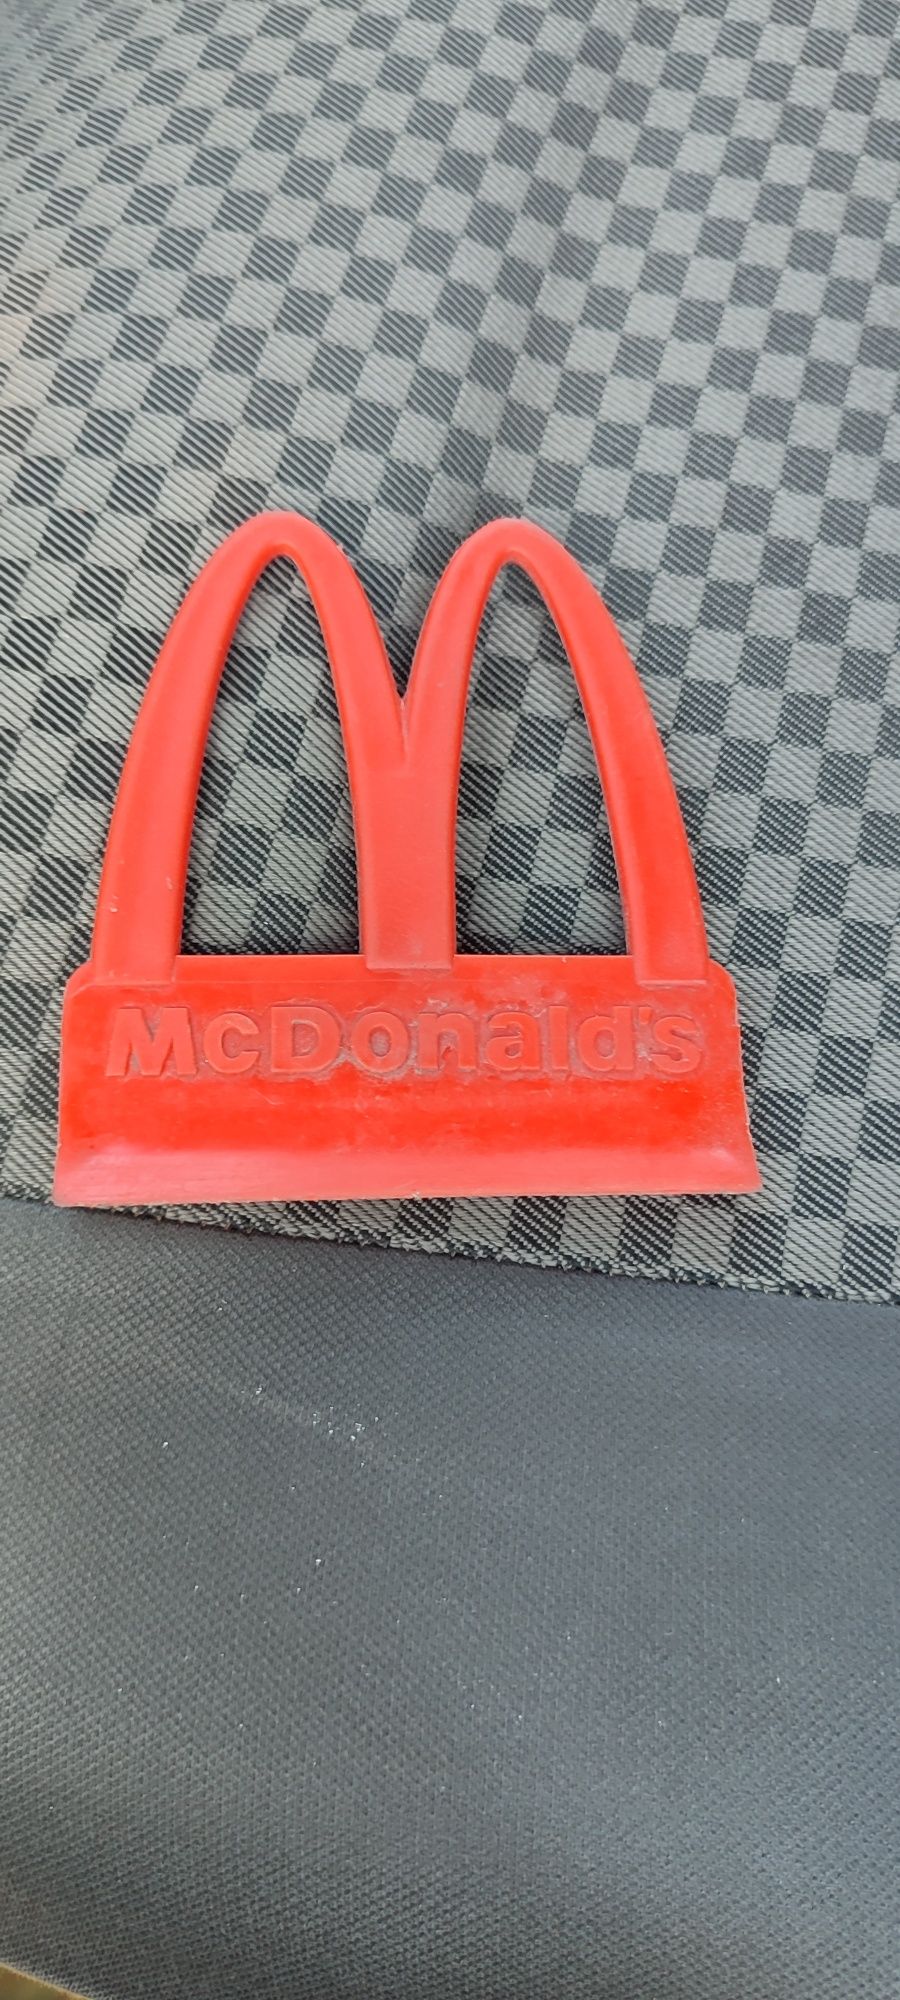 Skrobaczka McDonalds unikat